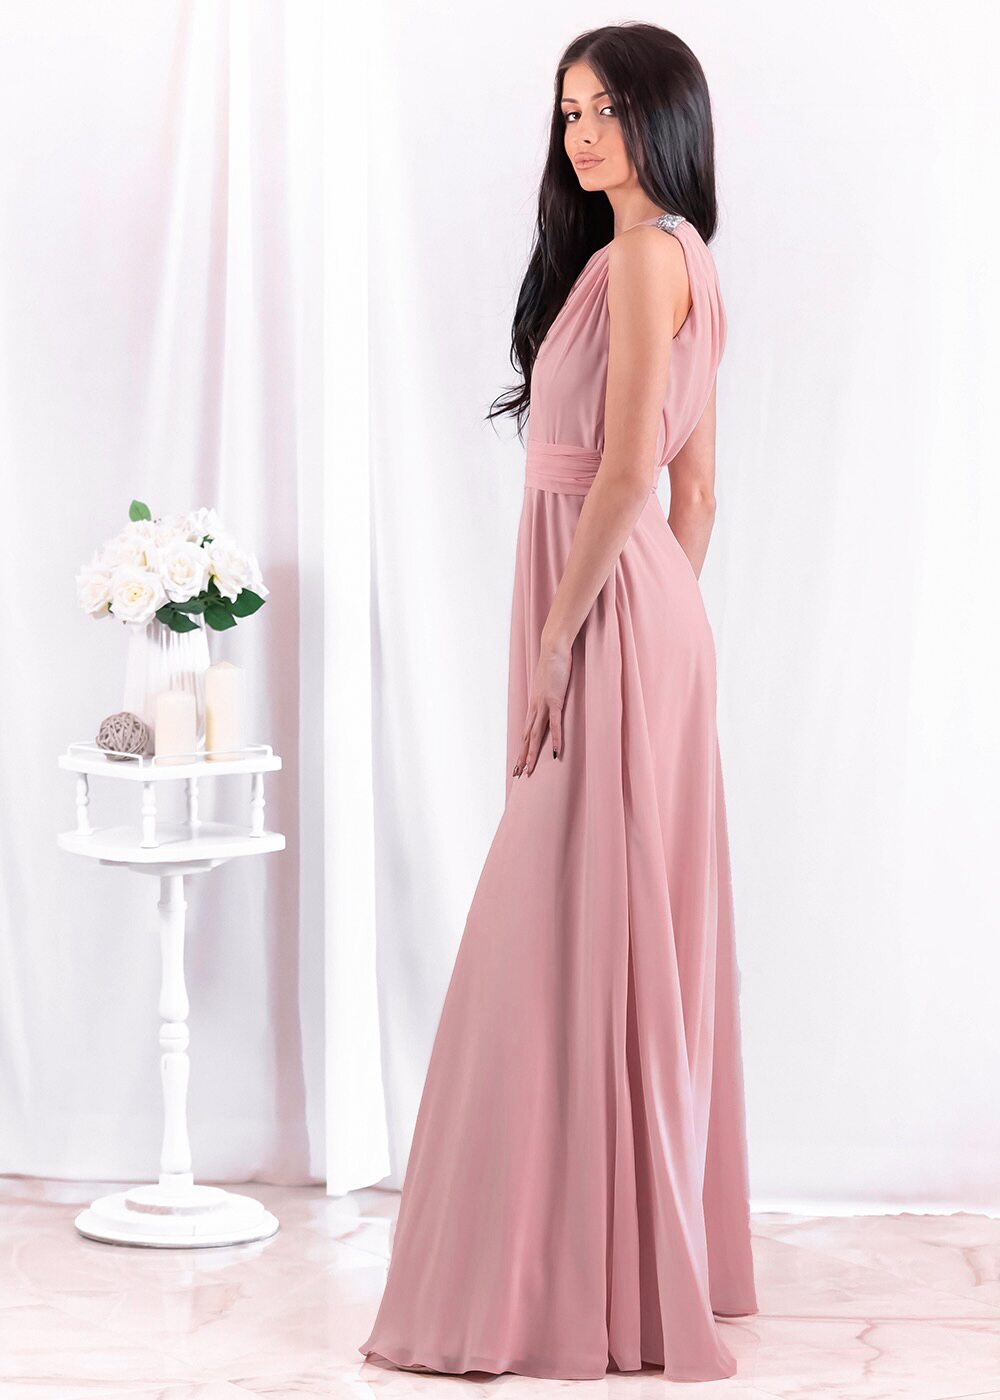 Stephanie Maxi Dress (Pink Sorbet)